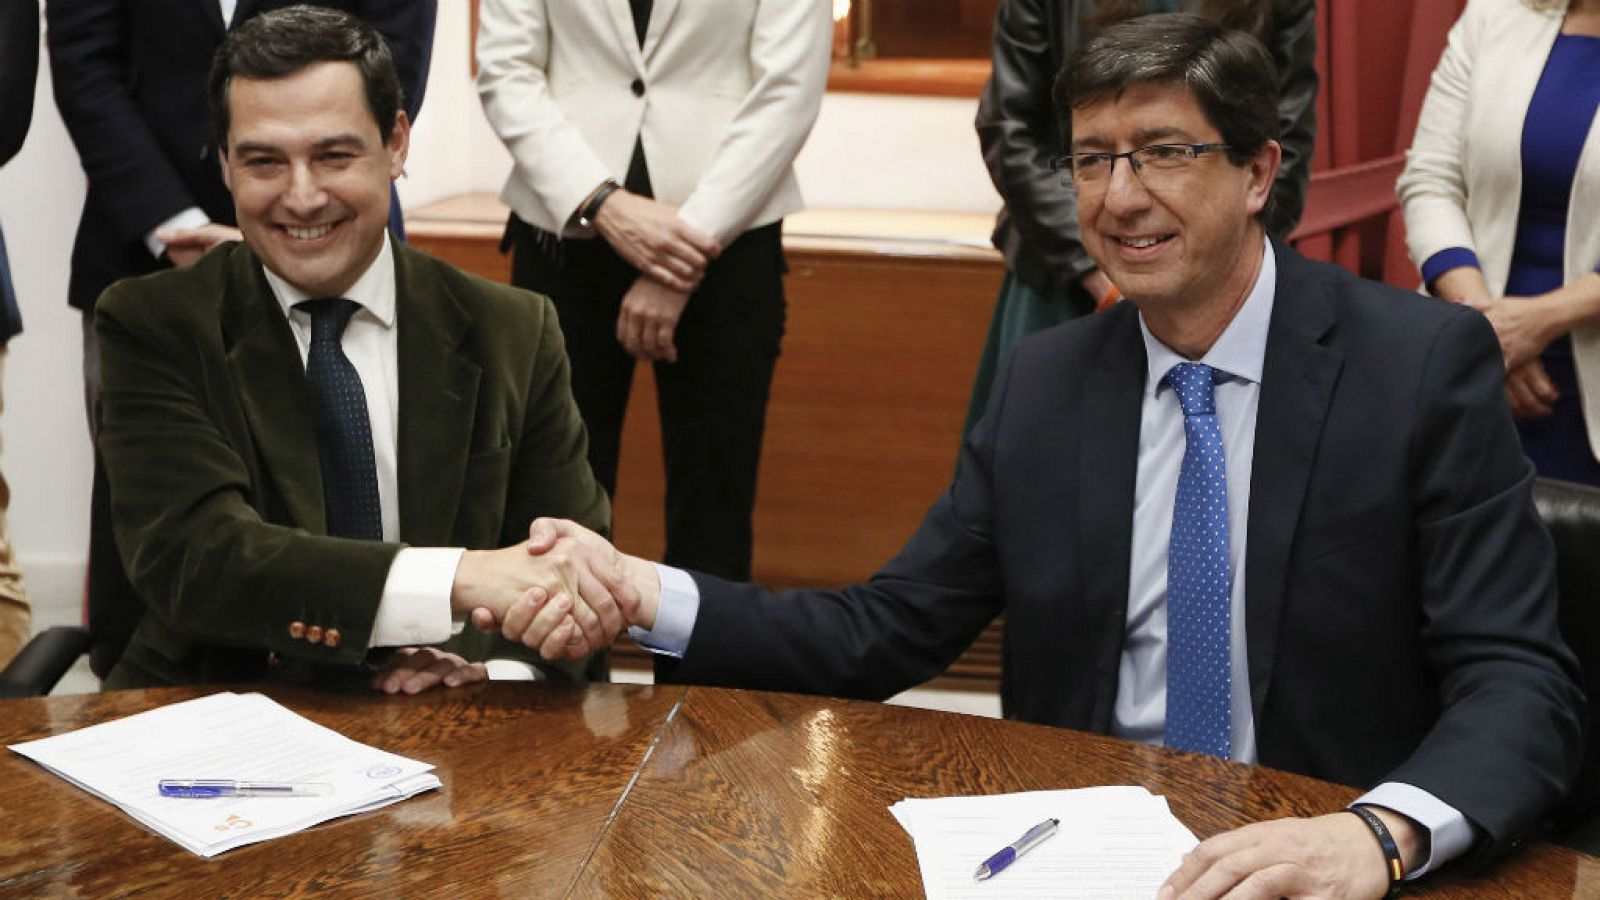  24 horas - El PP asume parte de las propuestas de Vox y logra un acuerdo para investir a Juanma Moreno - escuchar ahora